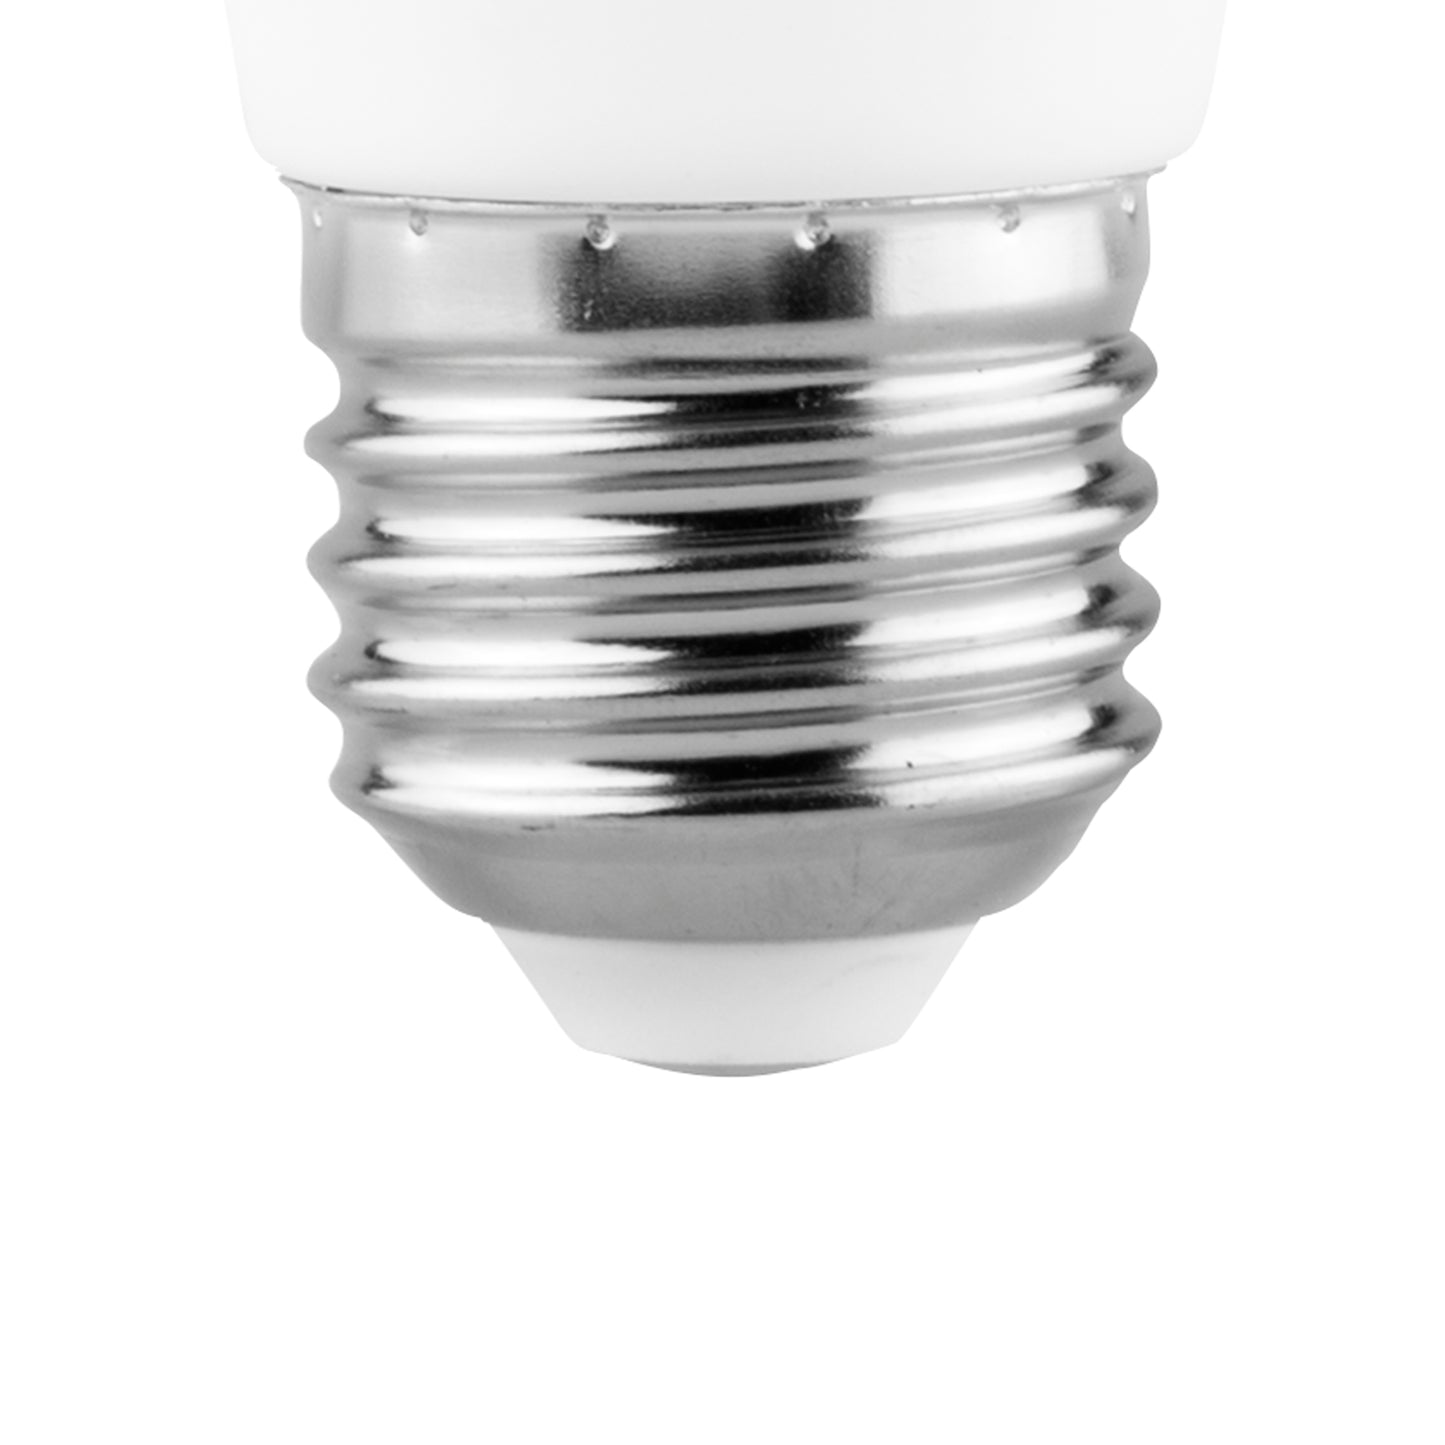 LED LAMP E27 E14 TRANSPARENT 2700 K 6400 K CANDLE FLAME FILAMENT 360º C37 